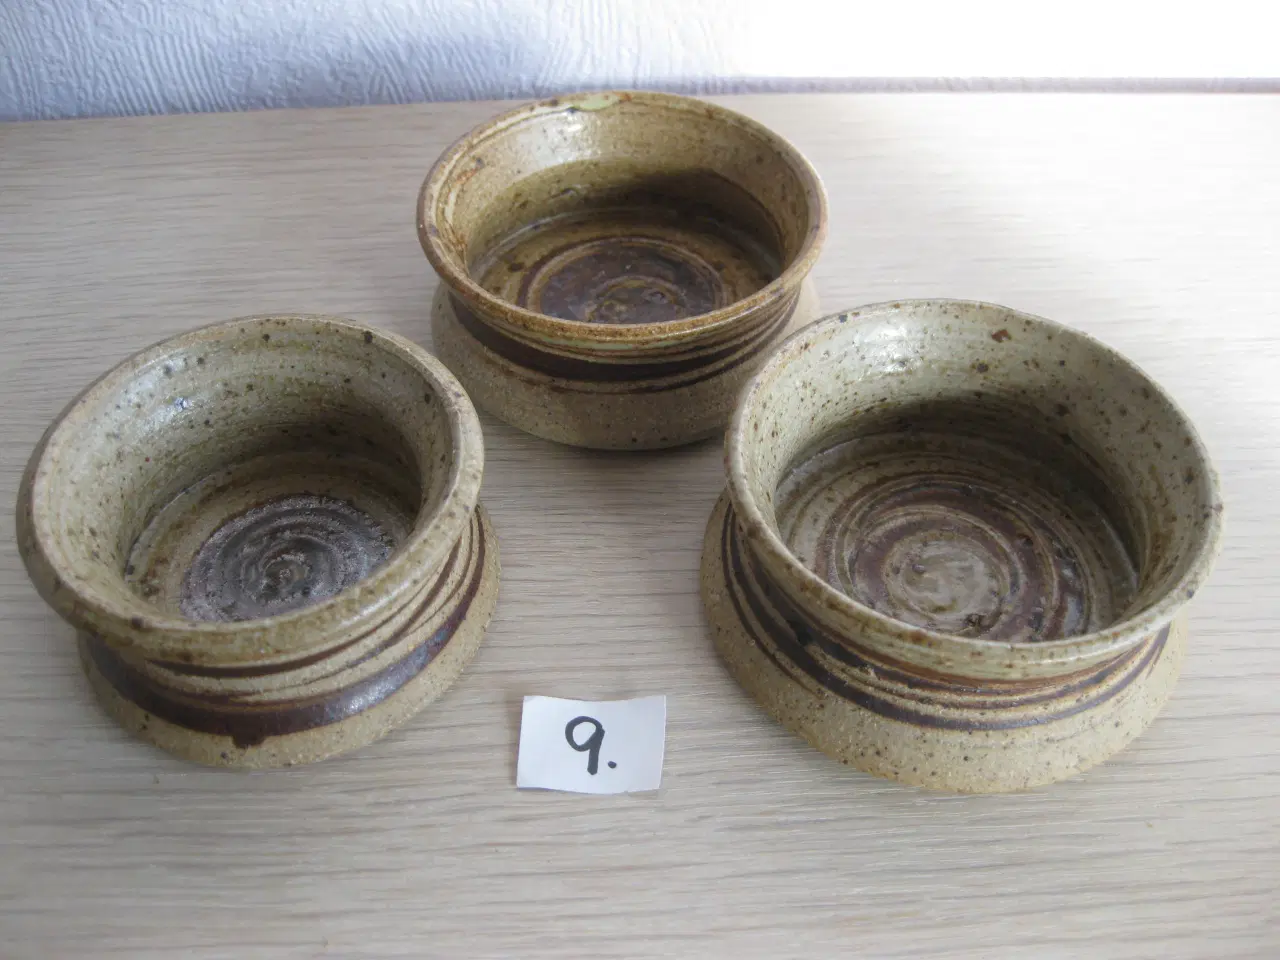 Billede 9 - Små skåle i keramik - fra "dengang" ;-)